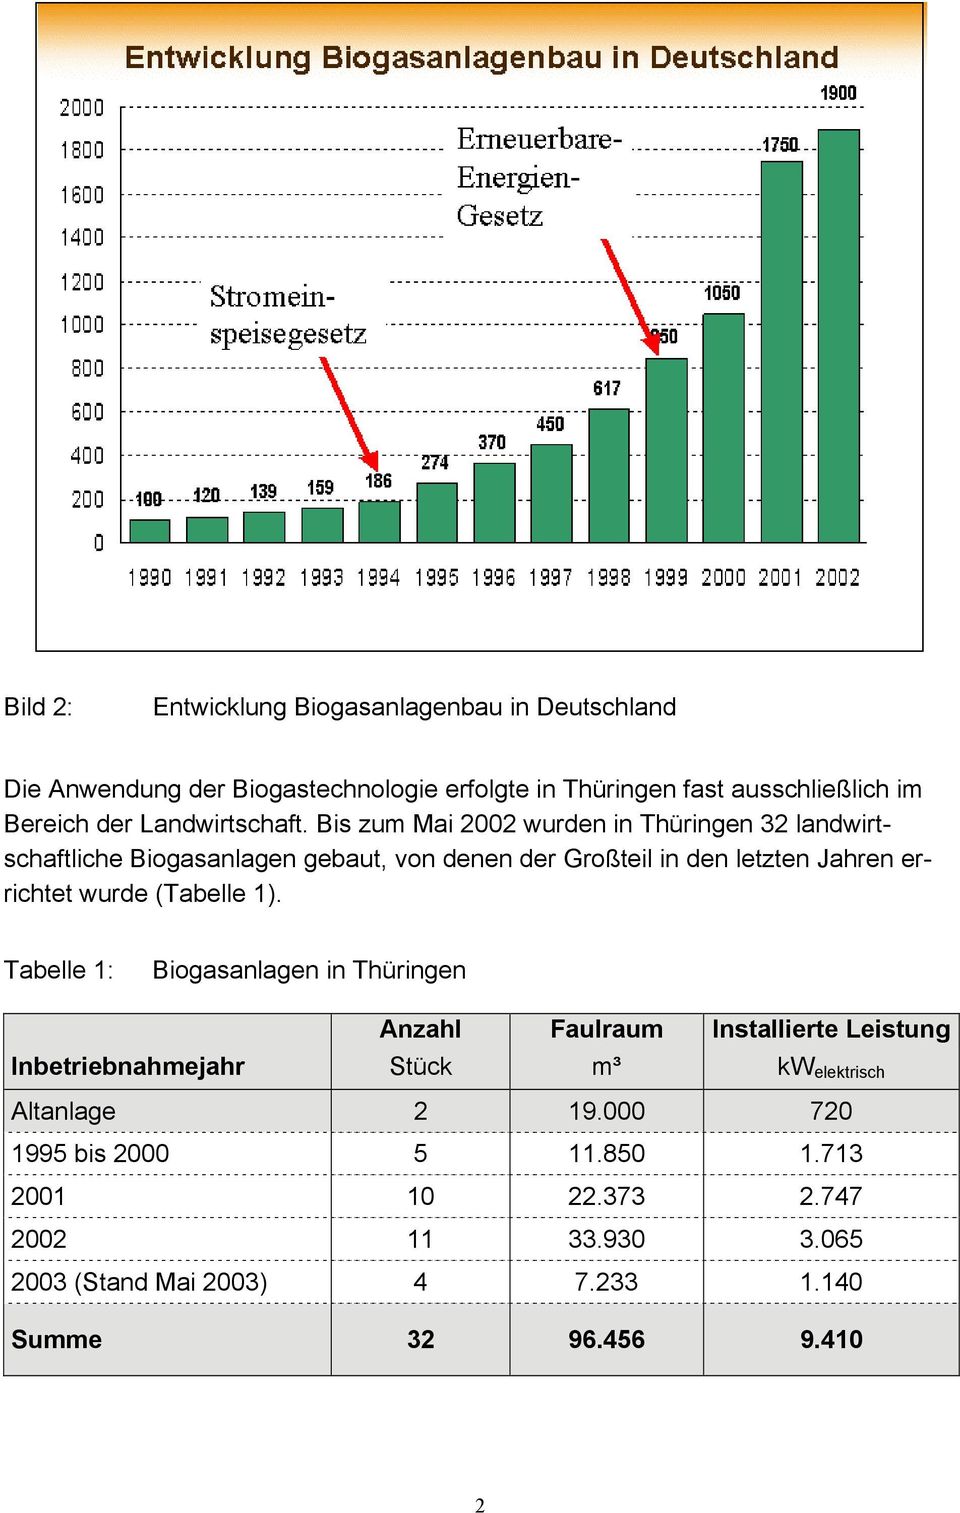 Bis zum Mai 2002 wurden in Thüringen 32 landwirtschaftliche Biogasanlagen gebaut, von denen der Großteil in den letzten Jahren errichtet wurde